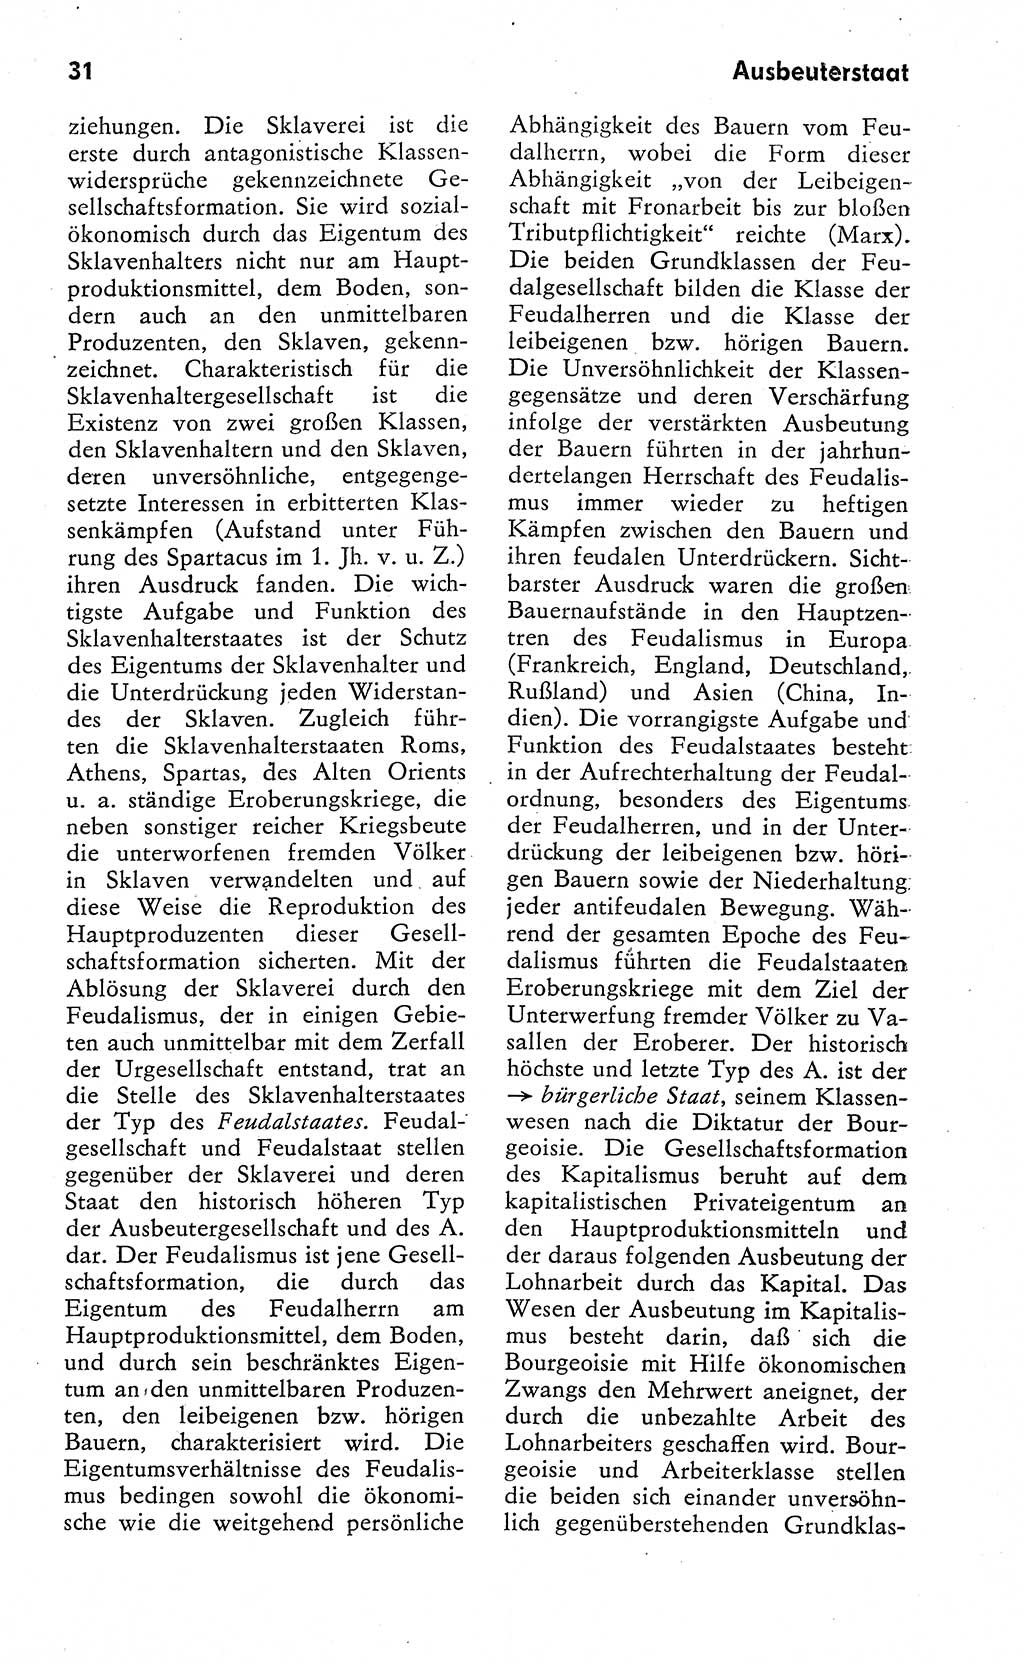 Wörterbuch zum sozialistischen Staat [Deutsche Demokratische Republik (DDR)] 1974, Seite 31 (Wb. soz. St. DDR 1974, S. 31)